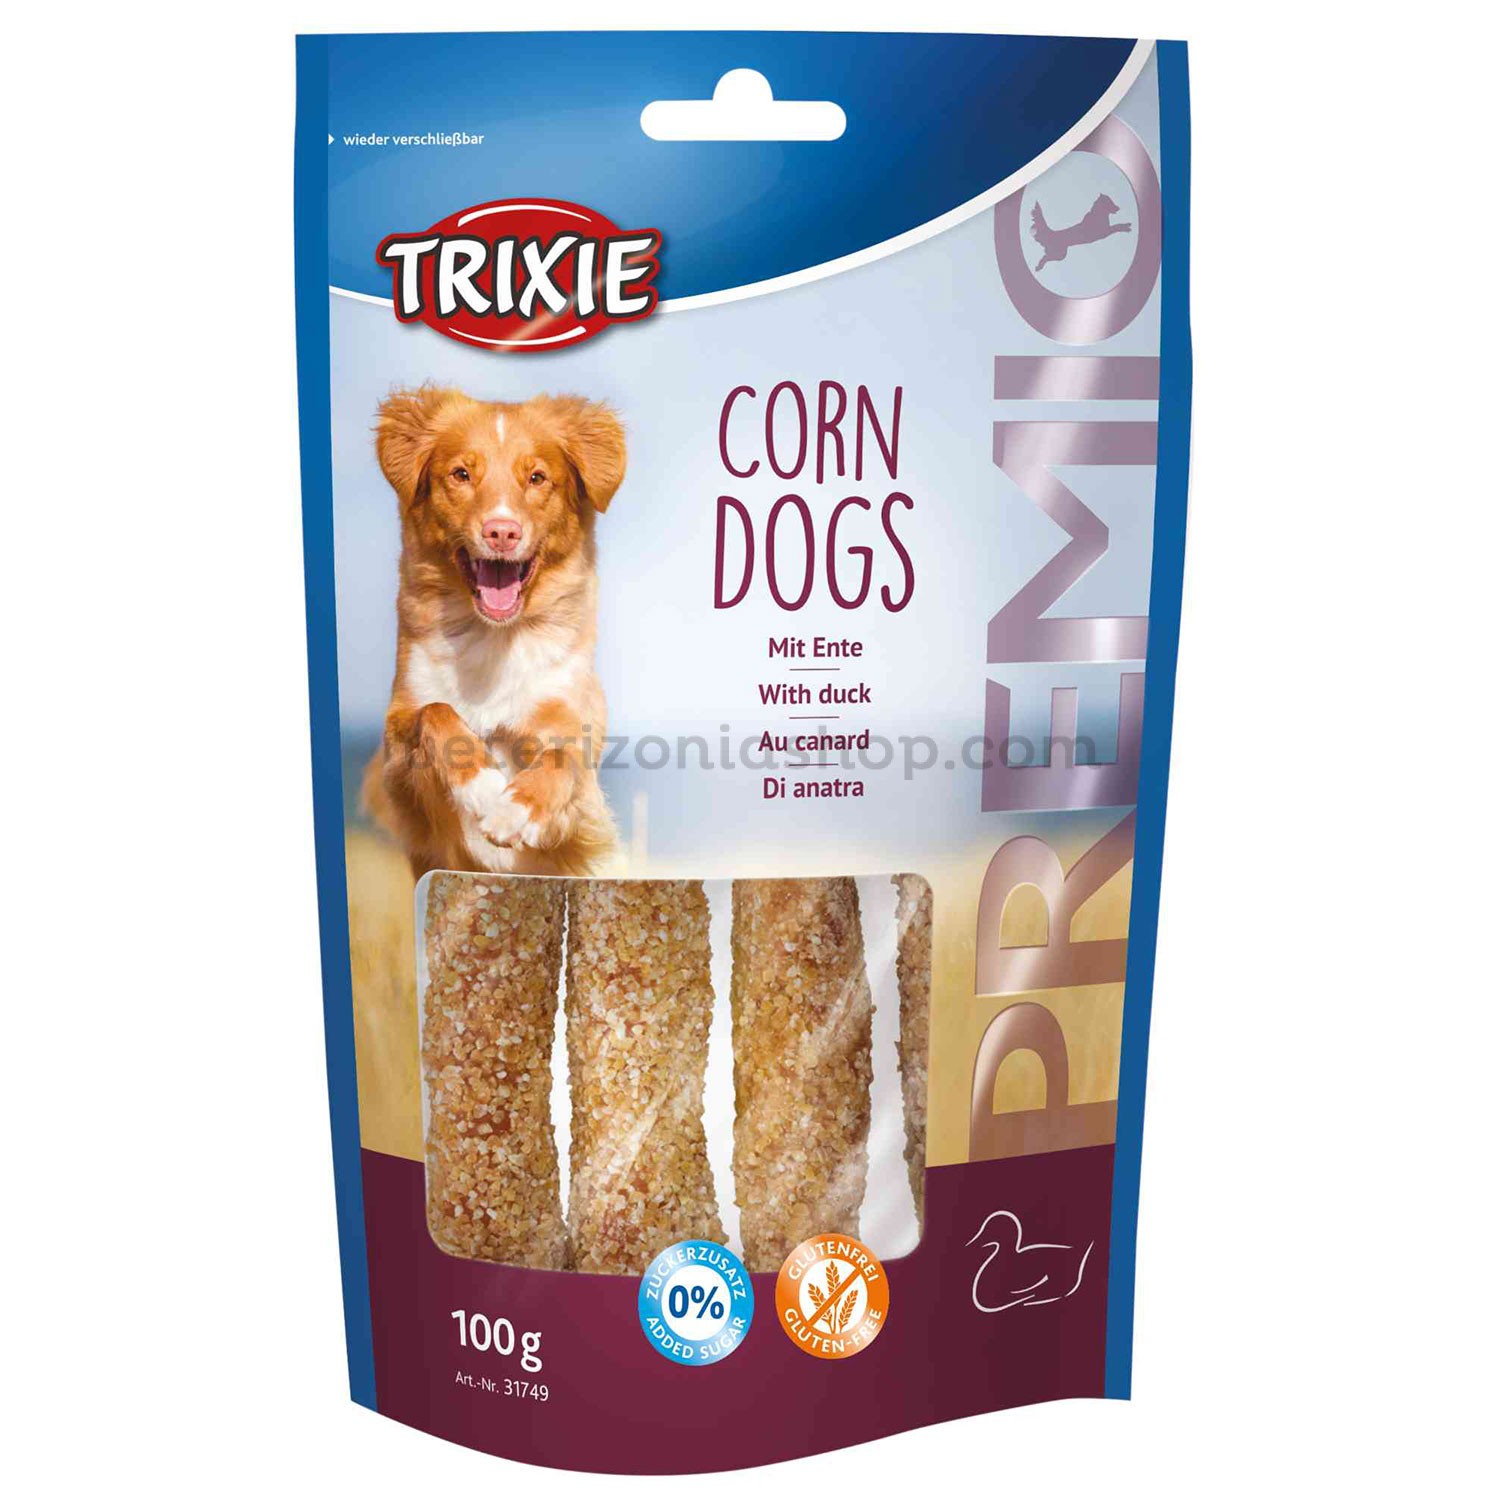 snacks masticables para perros